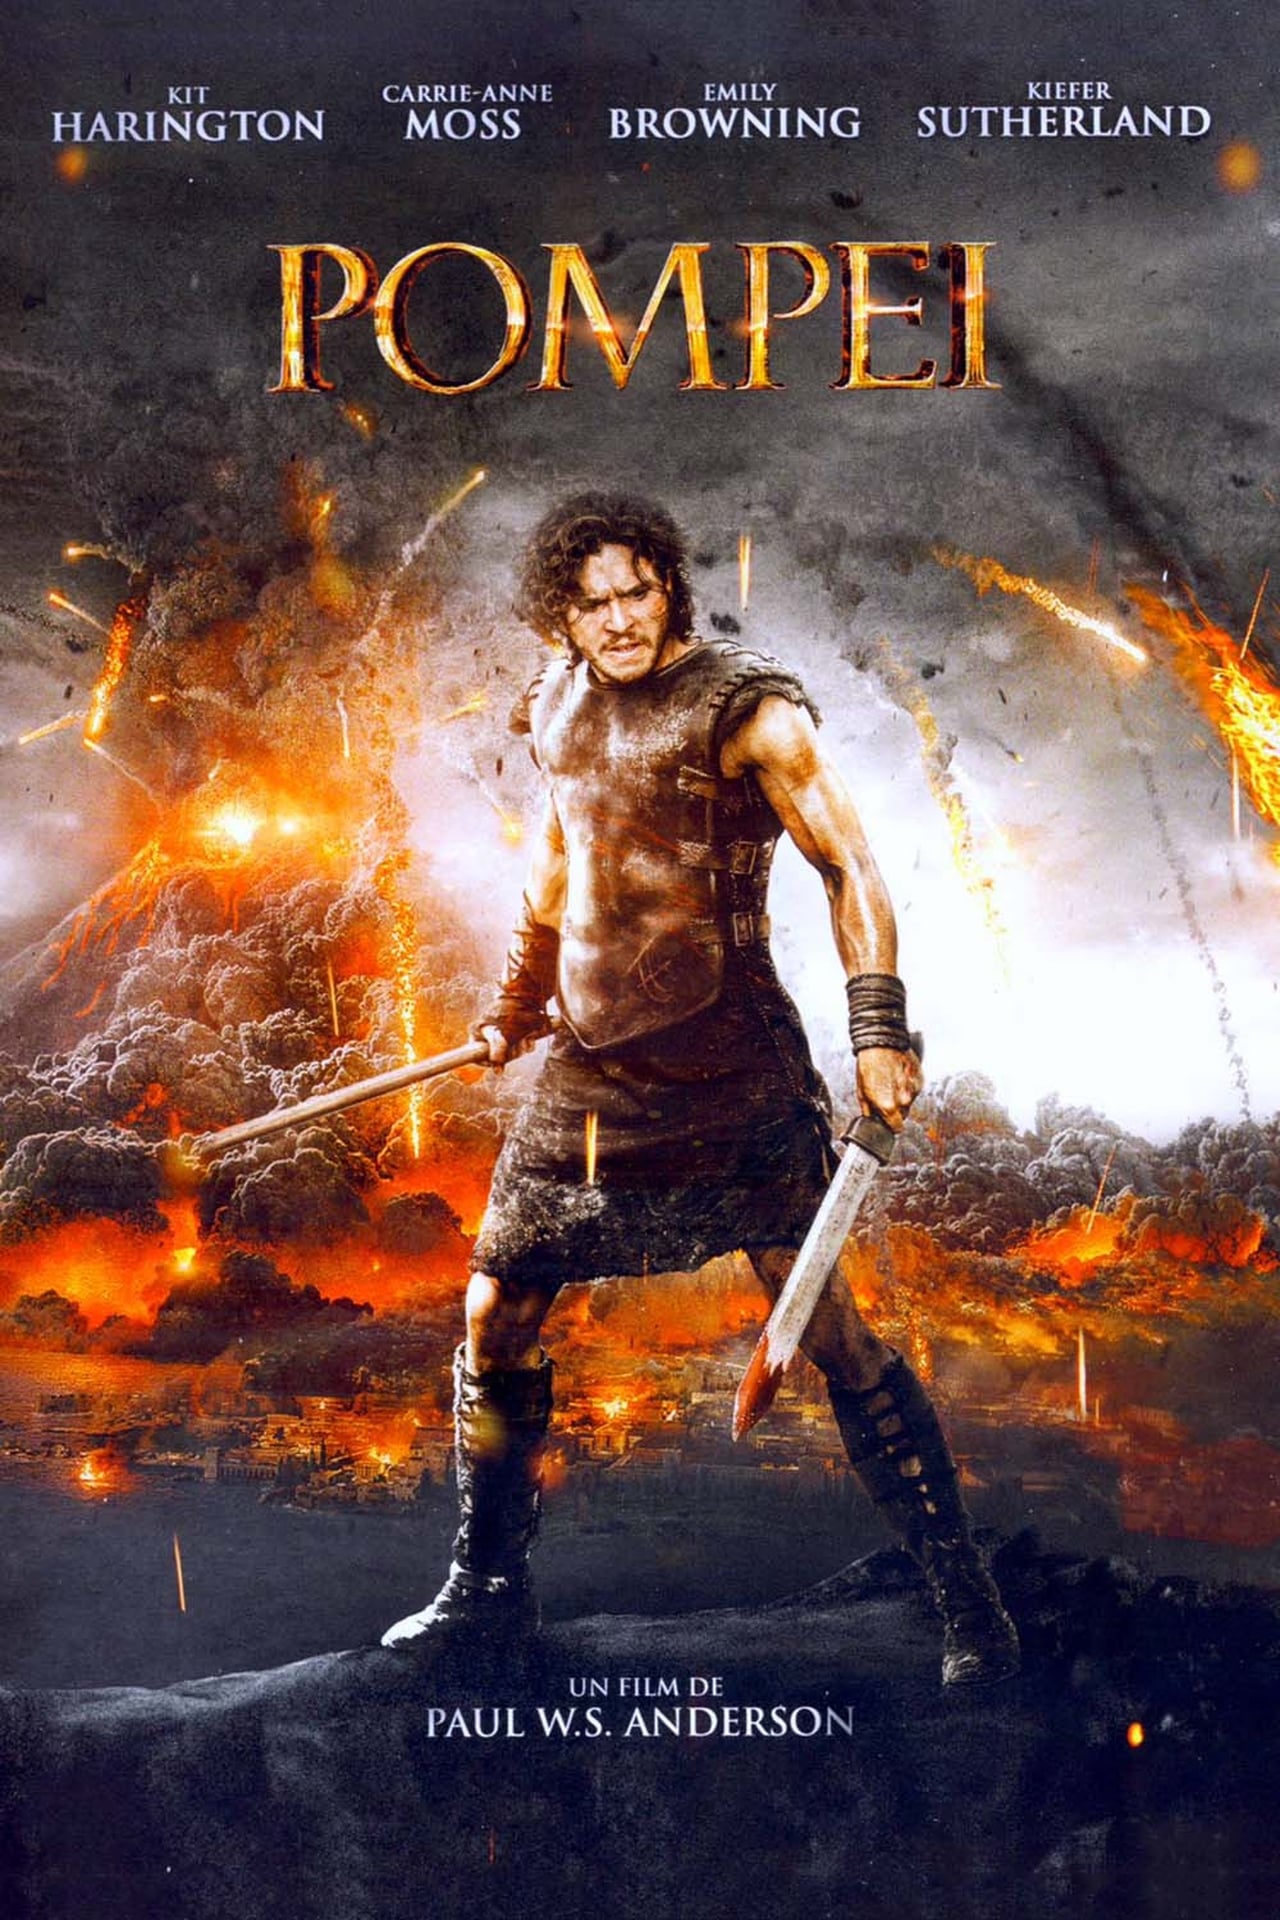 pompeii movie reviews